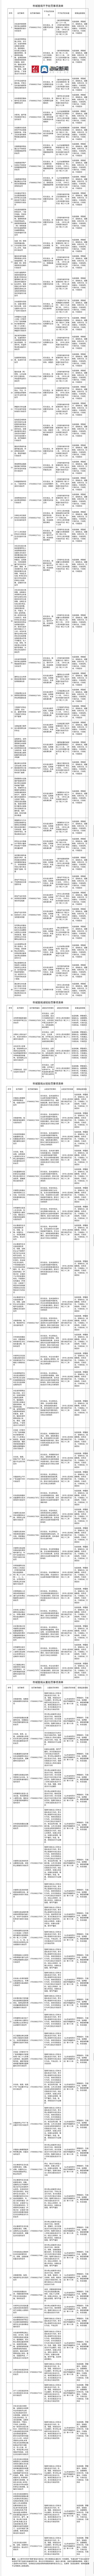 济南城管印发2021年版行政处分“四张清单”